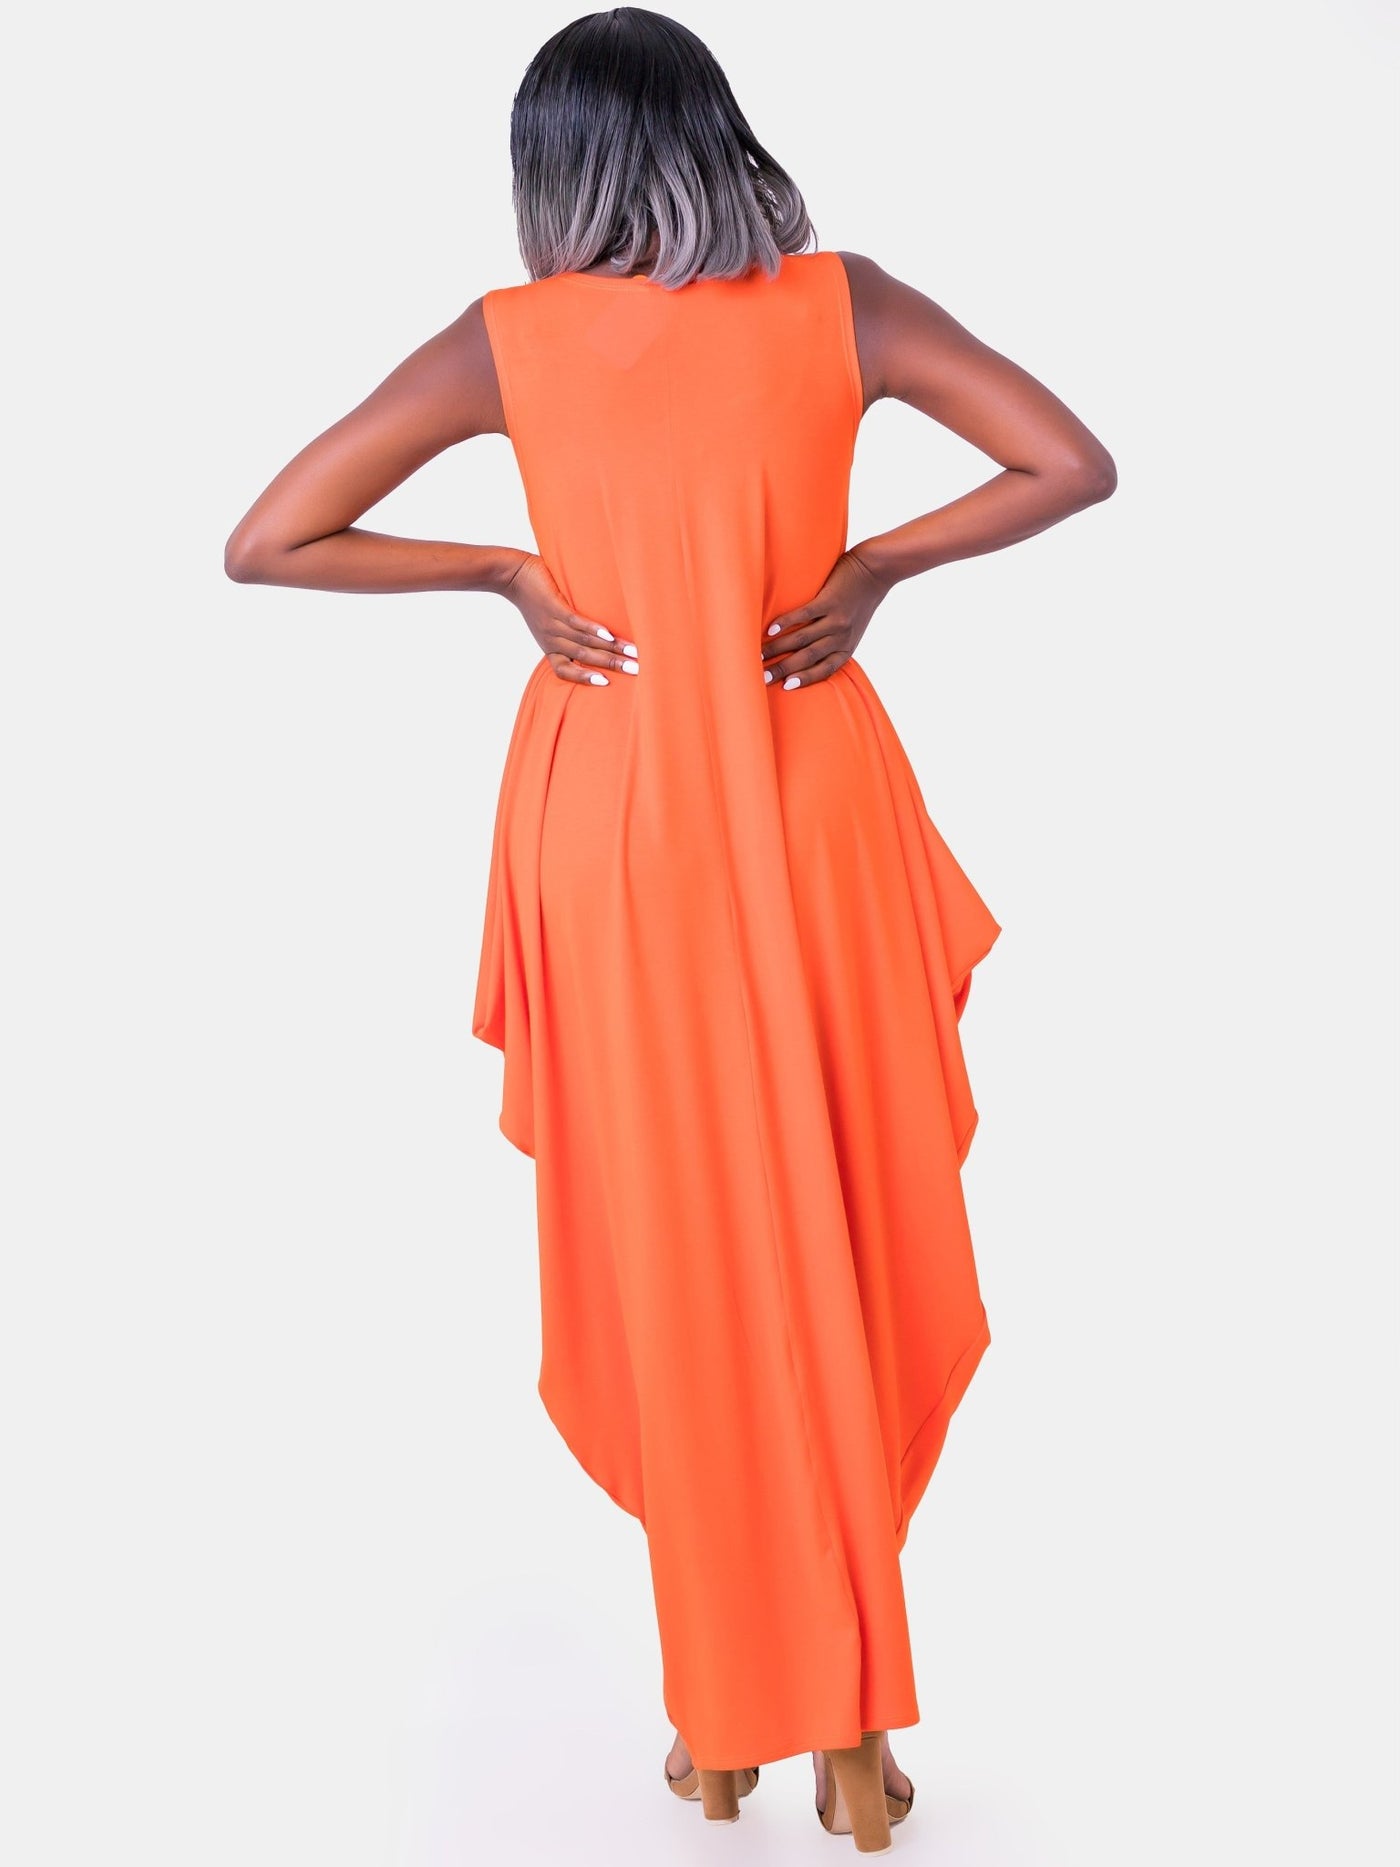 Vivo Basic Salma Maxi Boat Neck Dress - Orange - Shopzetu